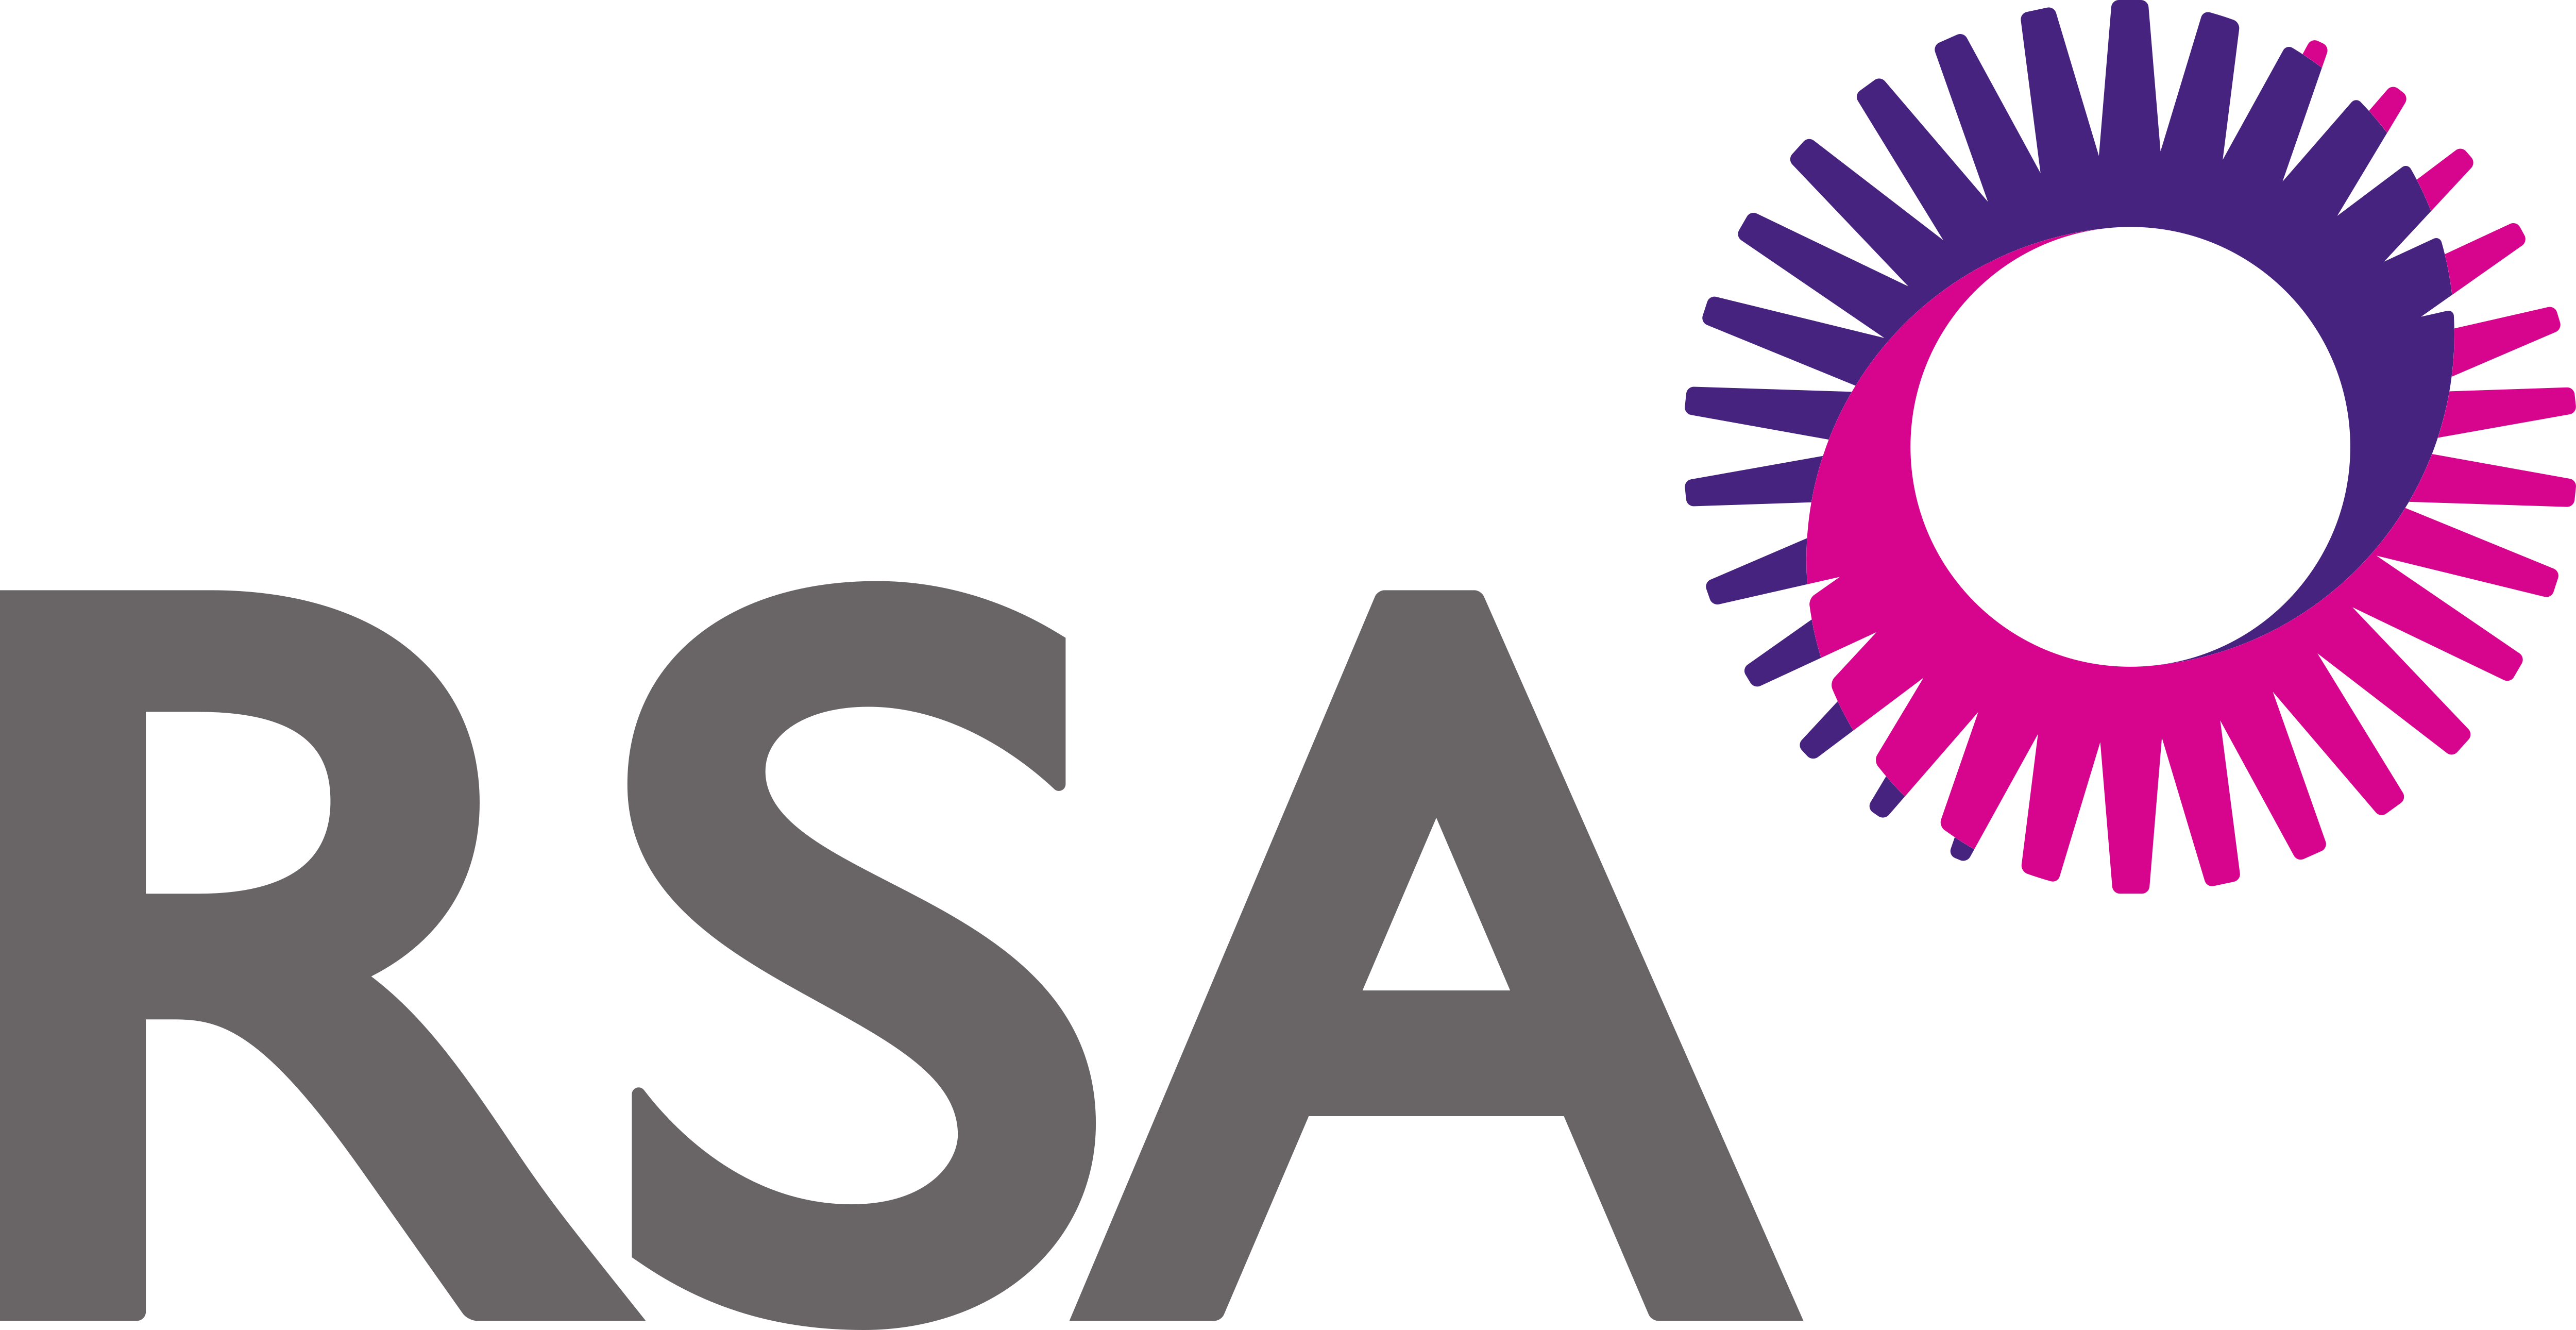 RSA Insurance Group Logos Download